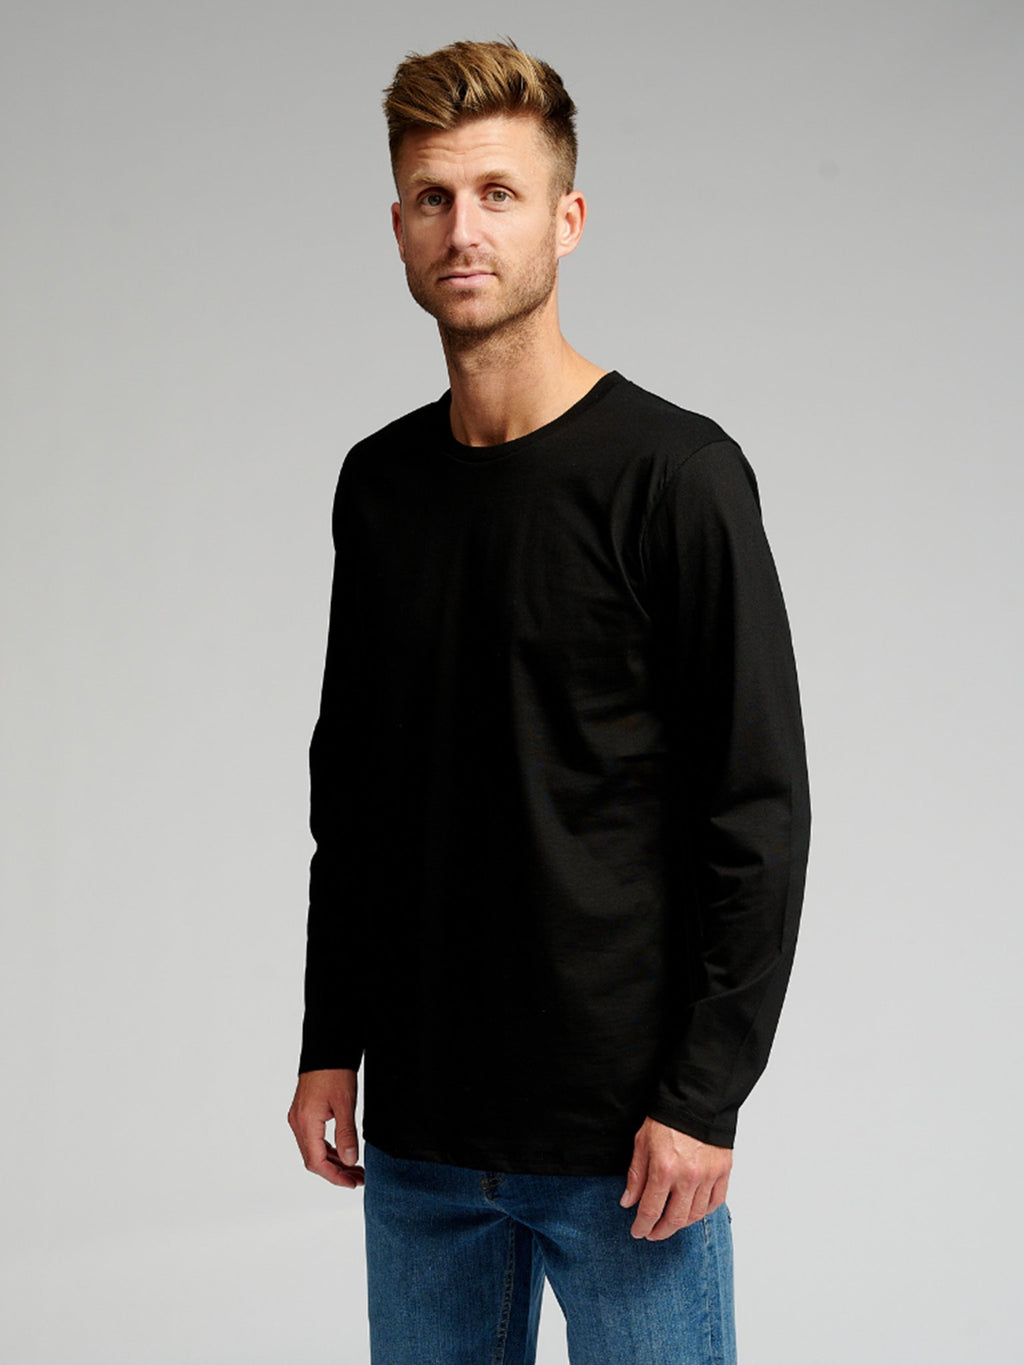 Grundlegend langärmeliges T-Shirt-schwarz